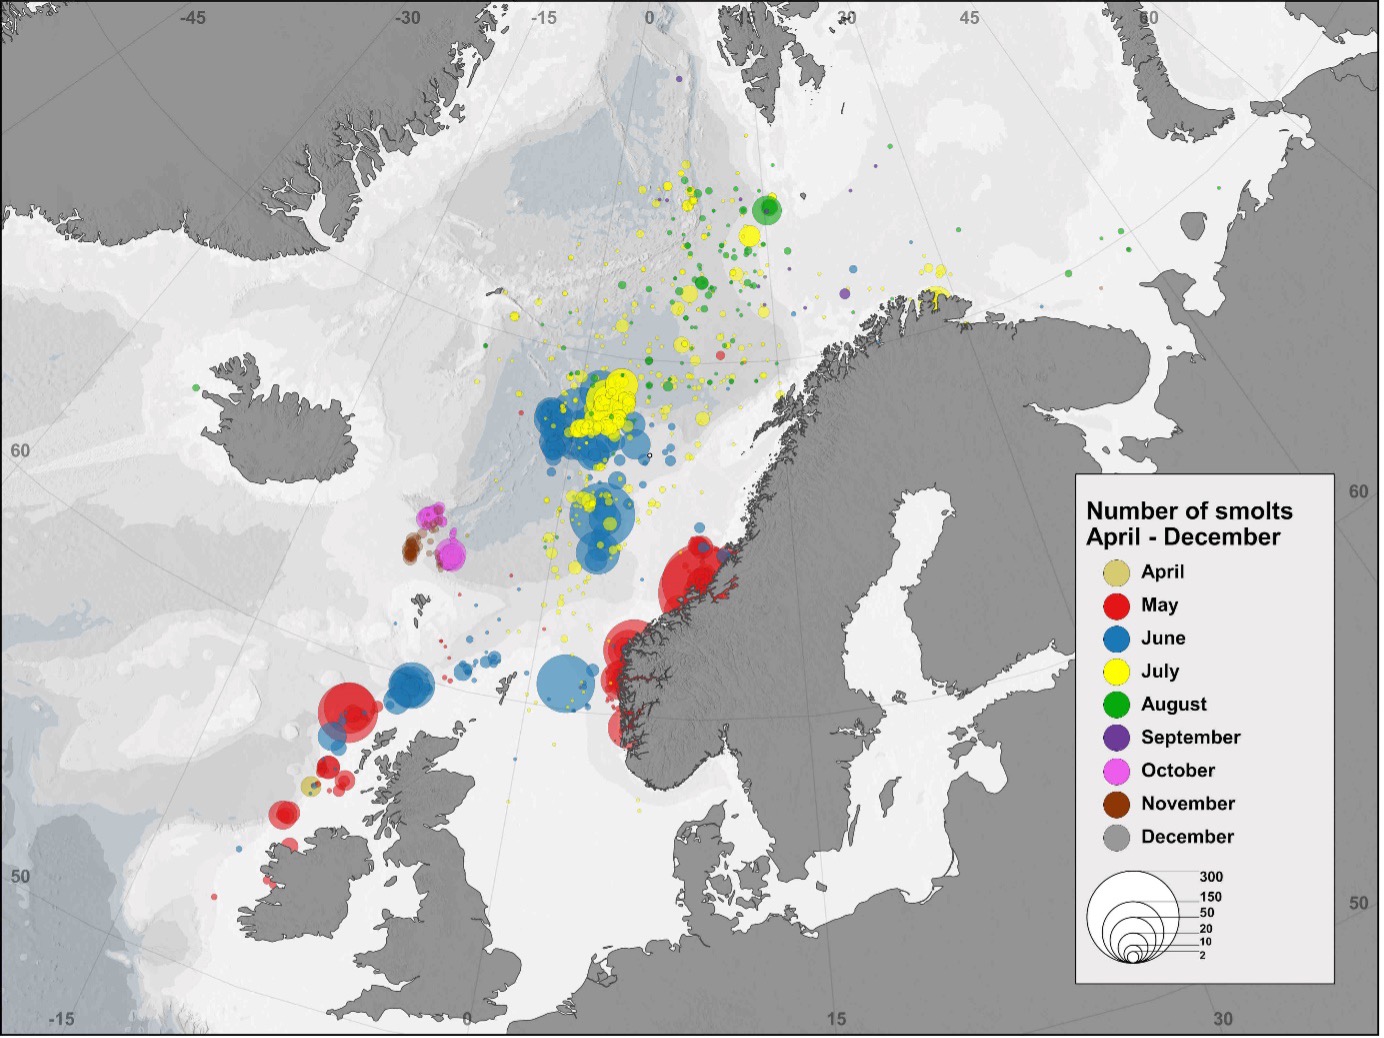 Kart over Nord-Atlanteren som viser fangster av postsmolt i ulike måneder gjennom mange år.